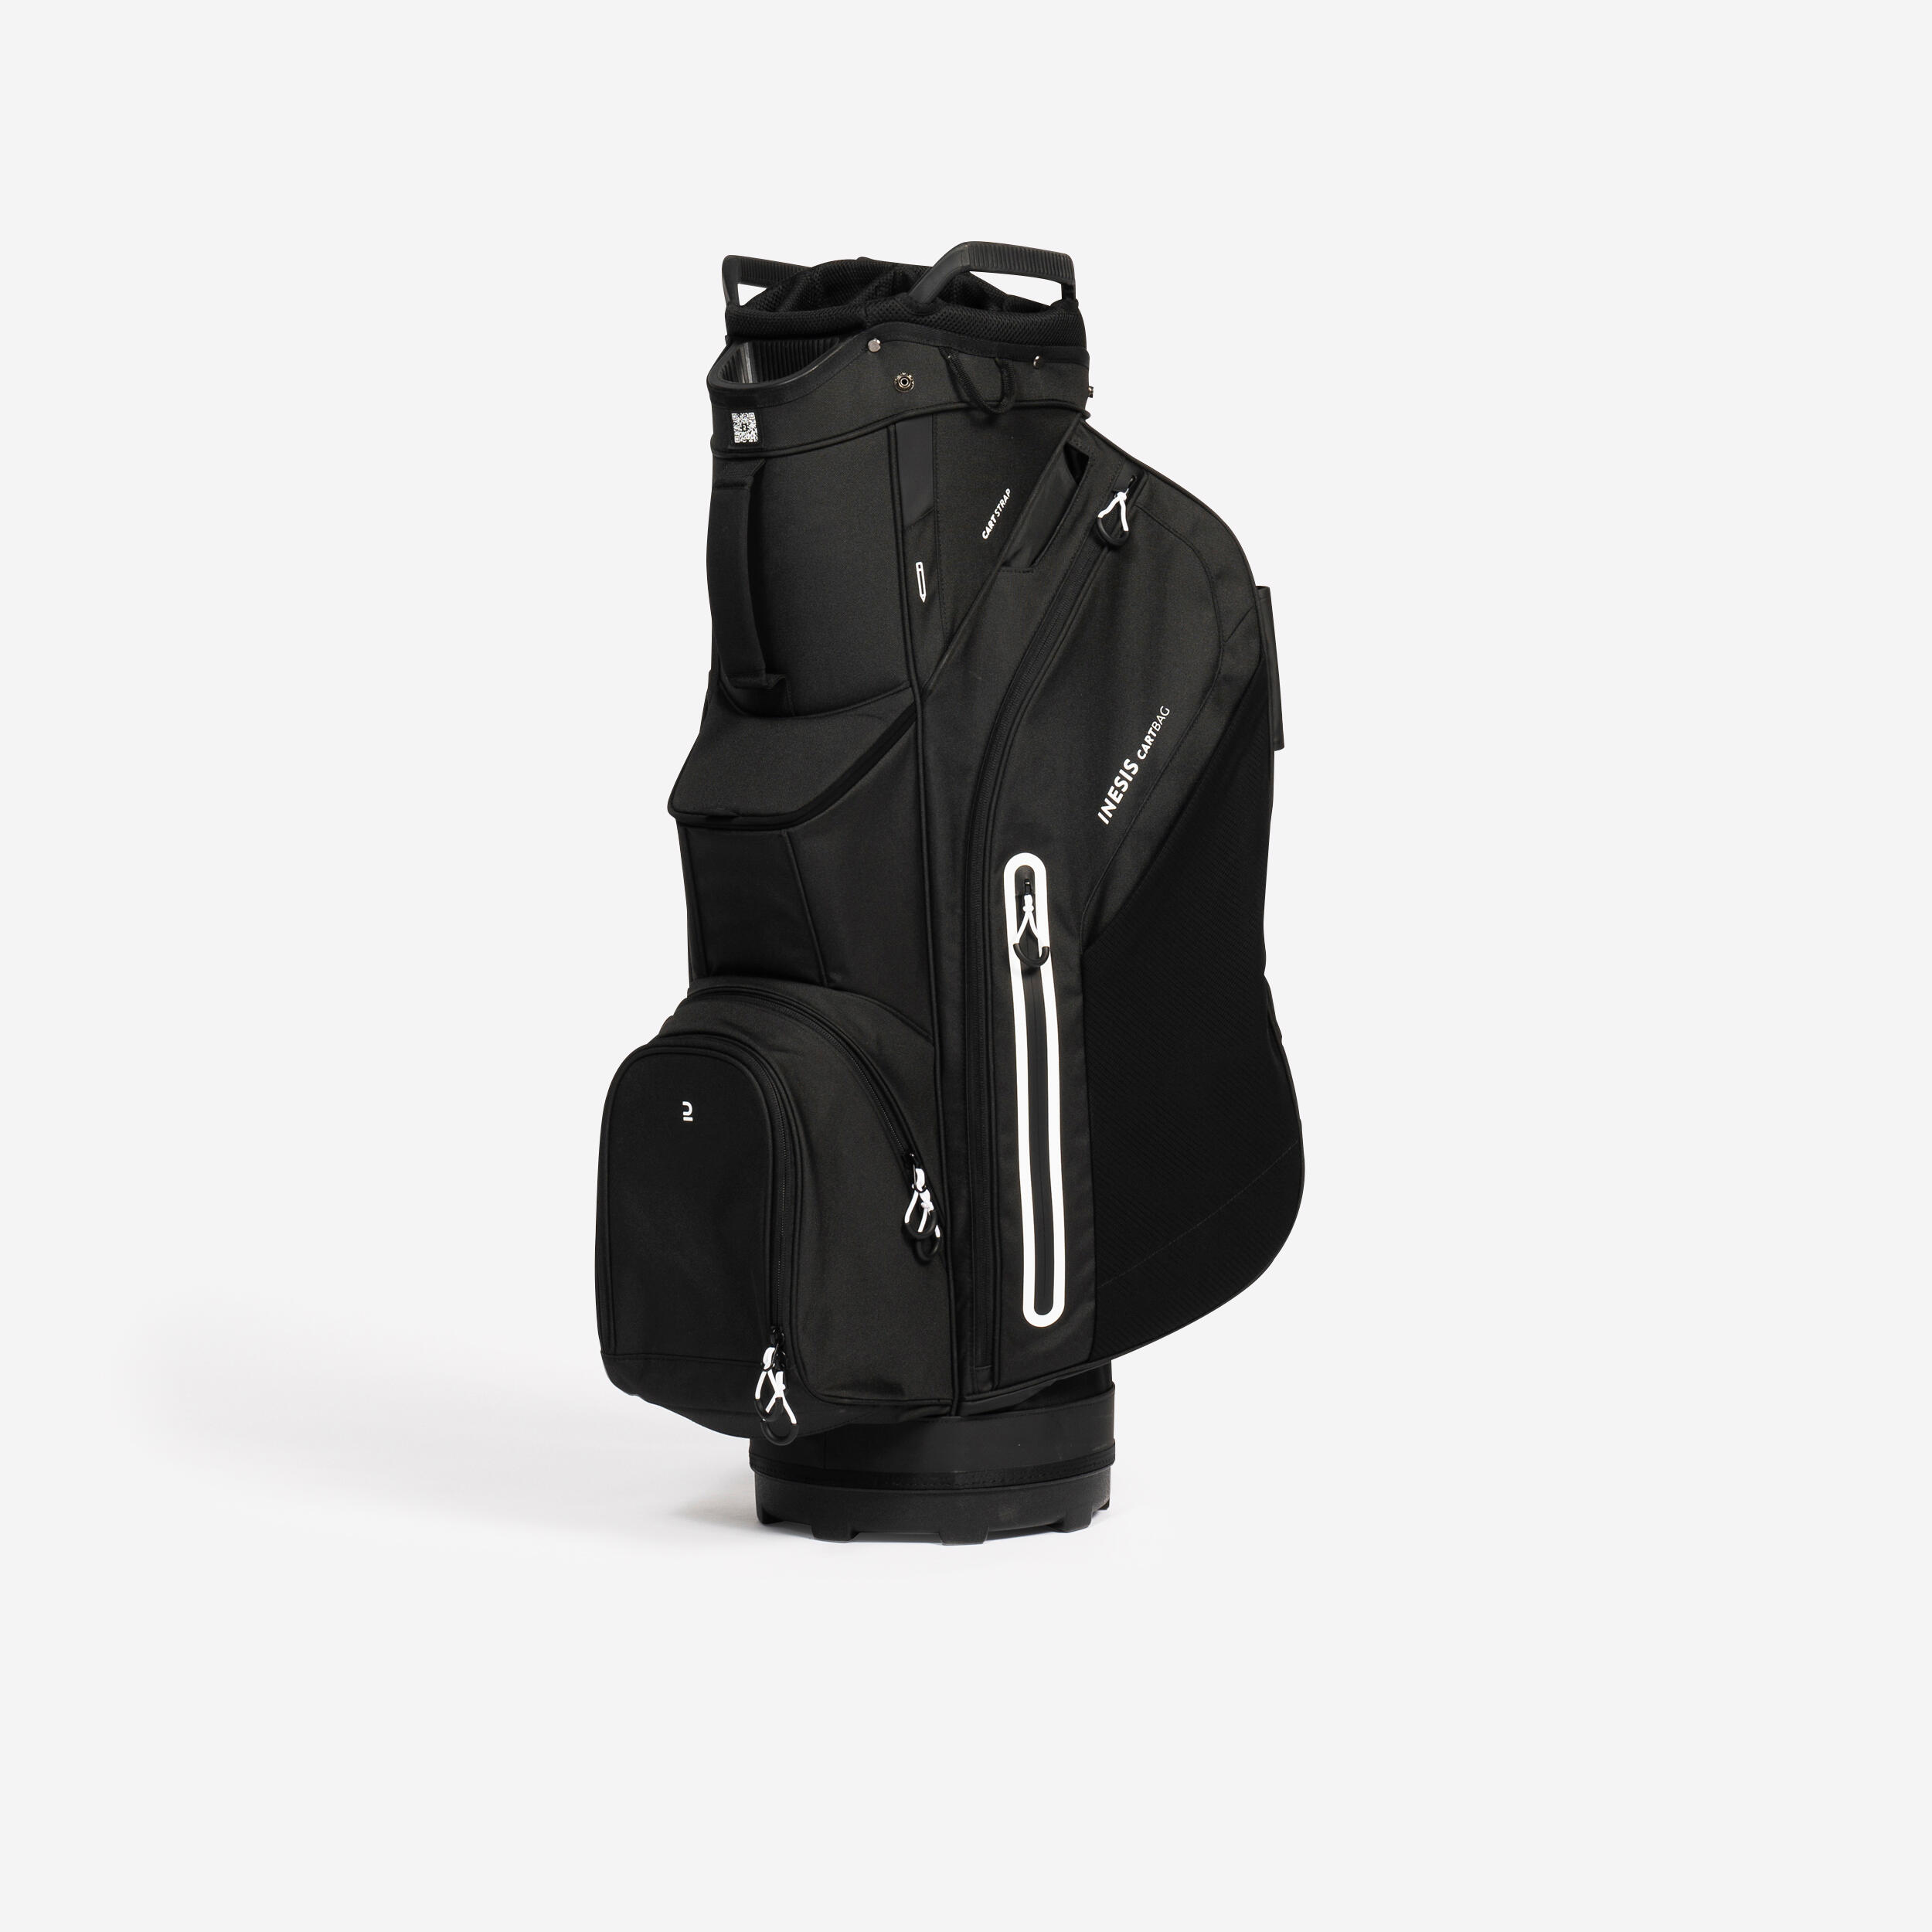 Image of Golf Trolley Bag - Inesis Black